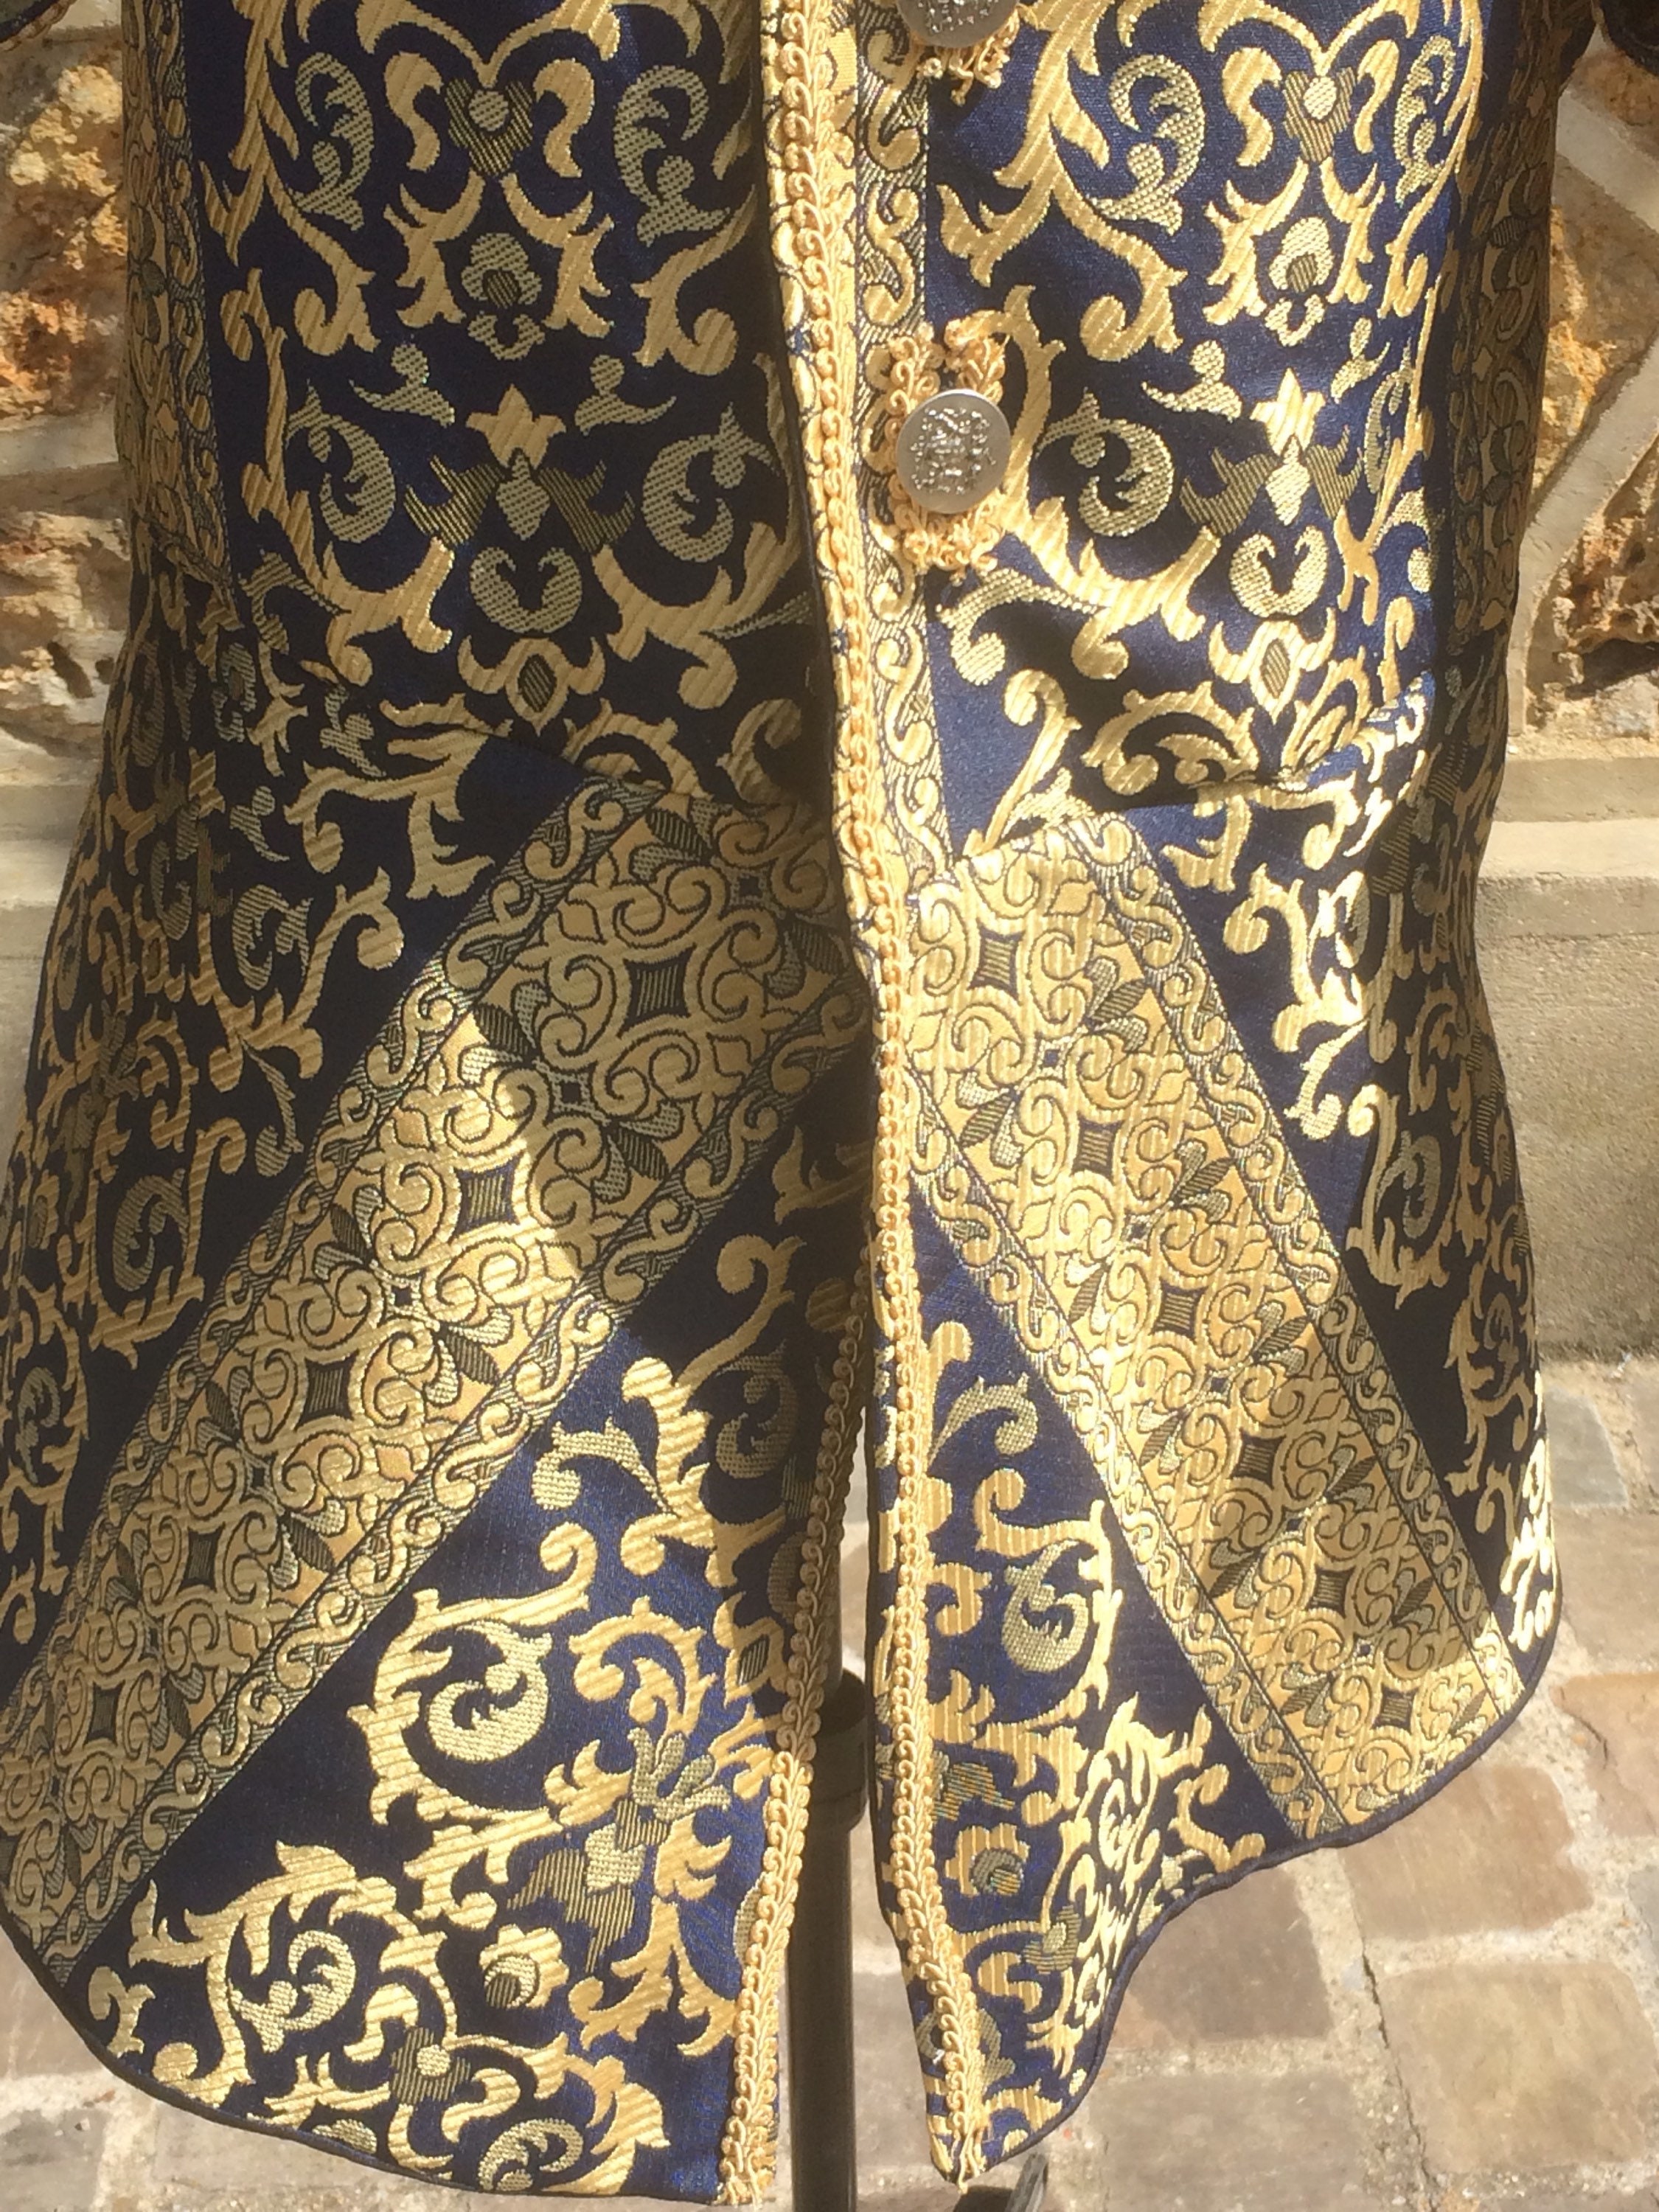 Jacket of nobility royal coat jacket with punctured sleeves | Etsy